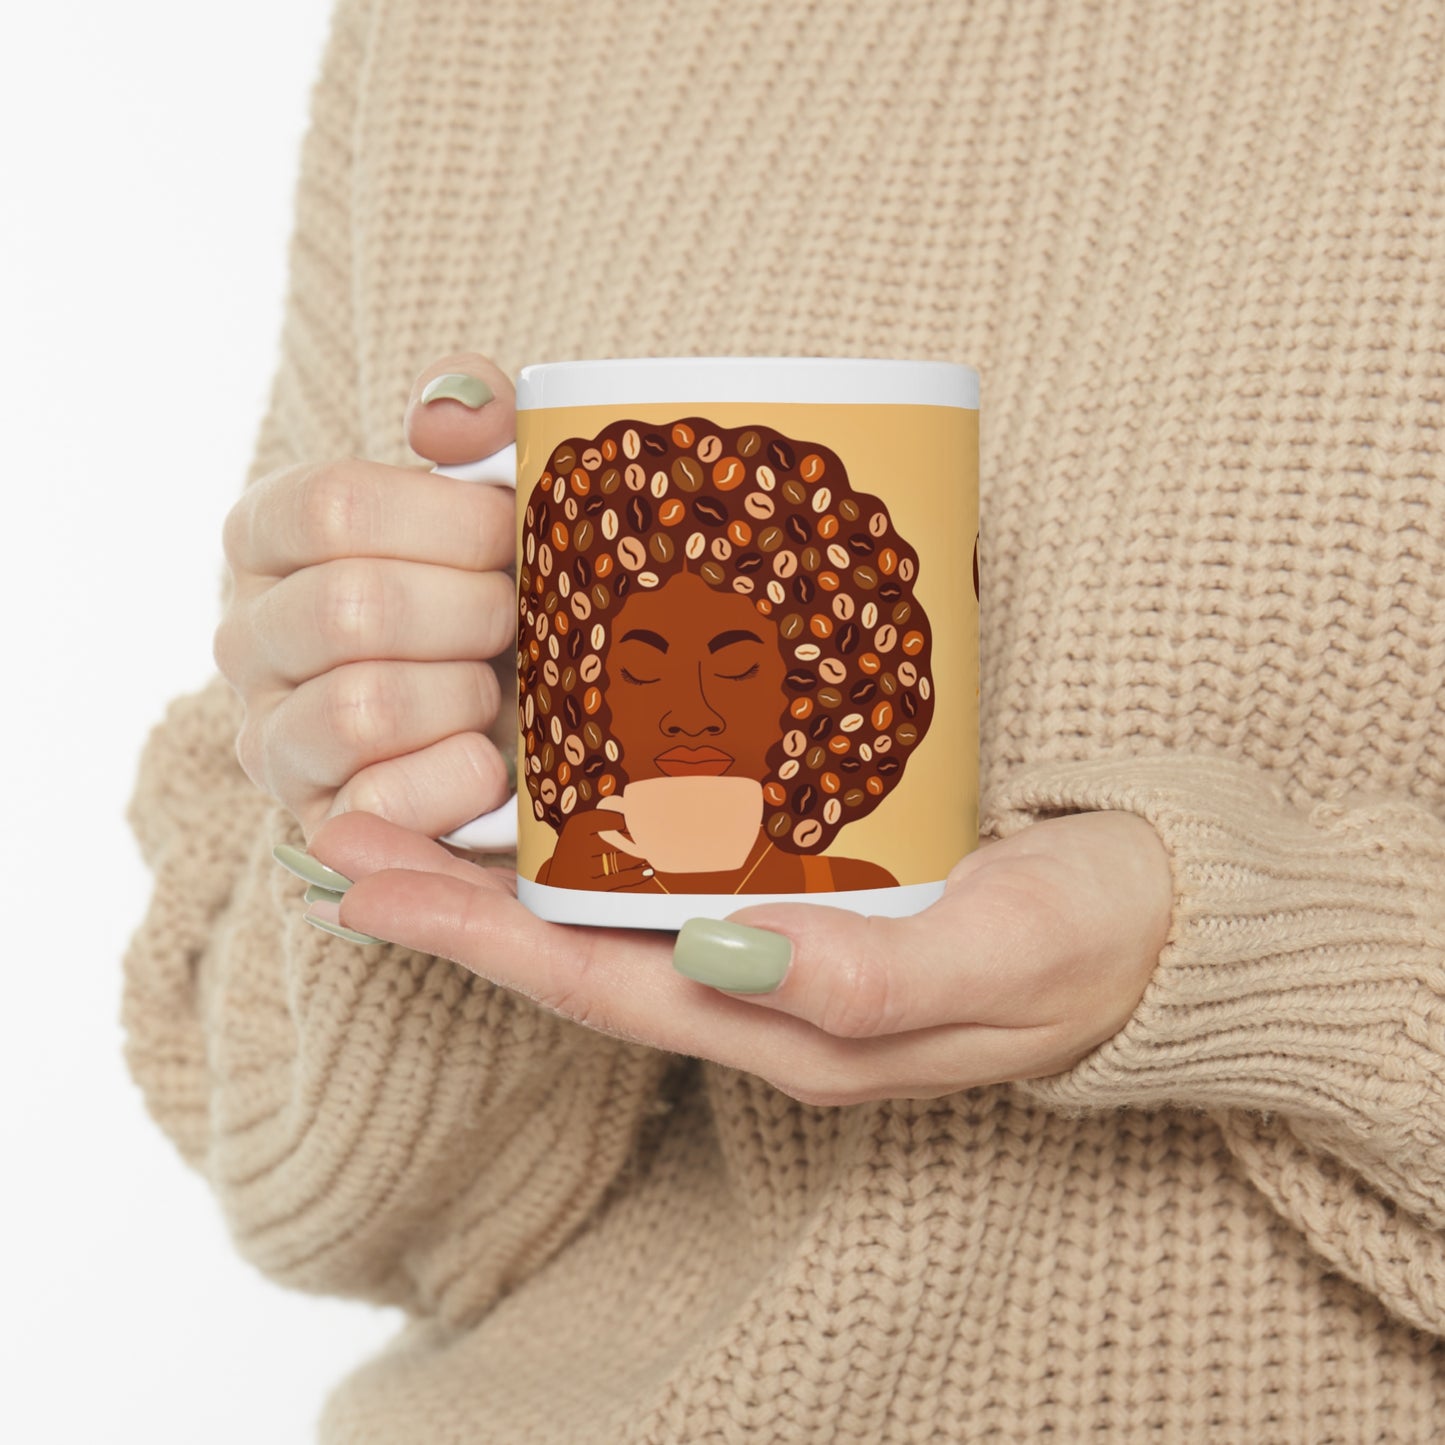 Caffeine Queen- Afro Coffee Ceramic Mug (11oz)